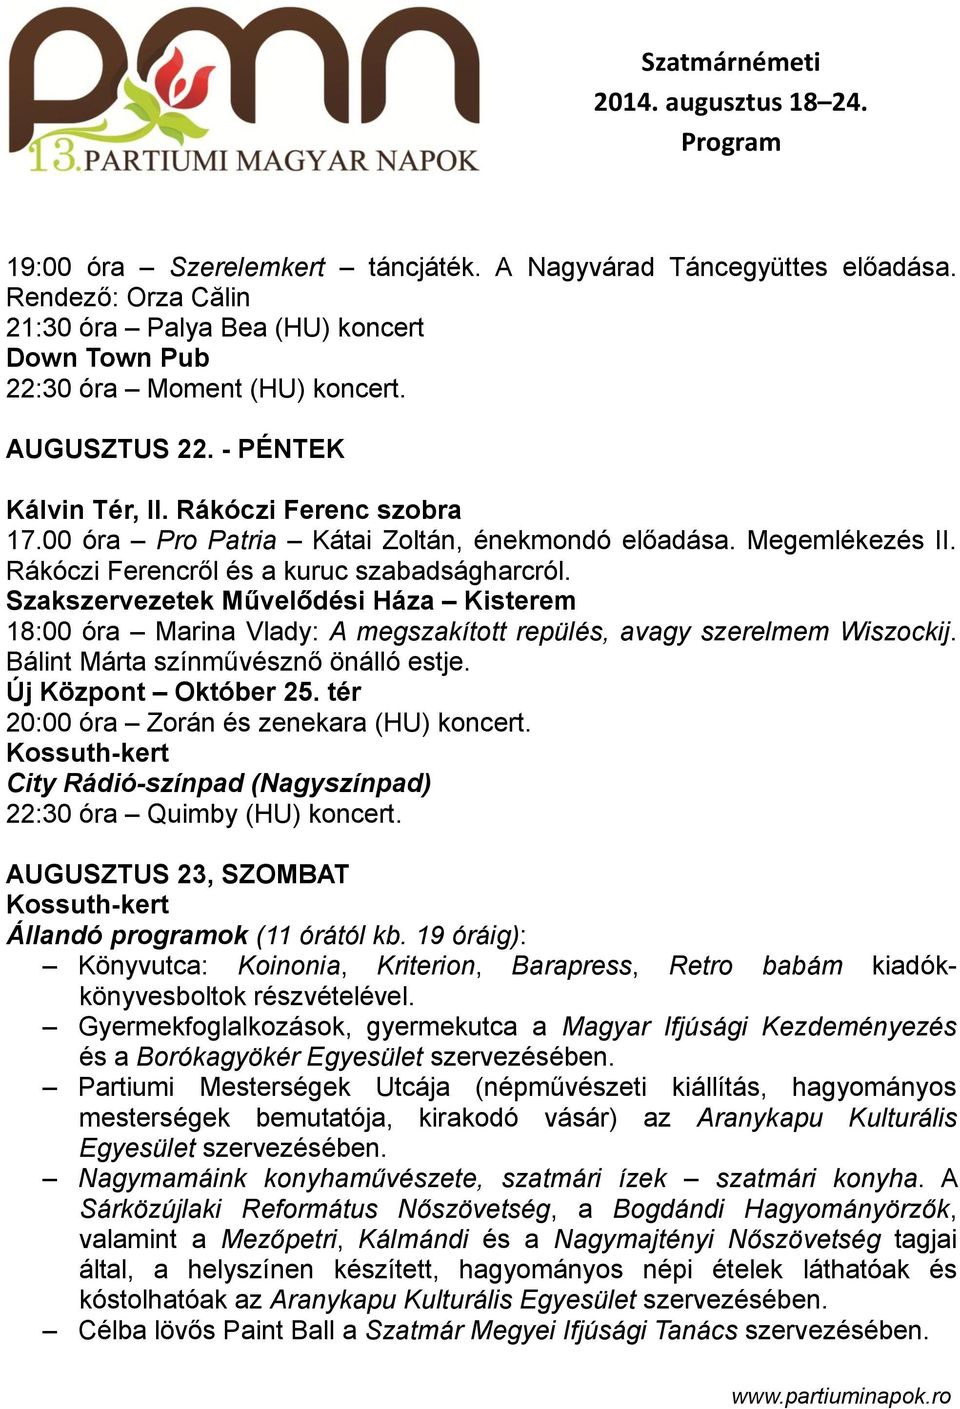 Szatmárnémeti augusztus Program - PDF Ingyenes letöltés